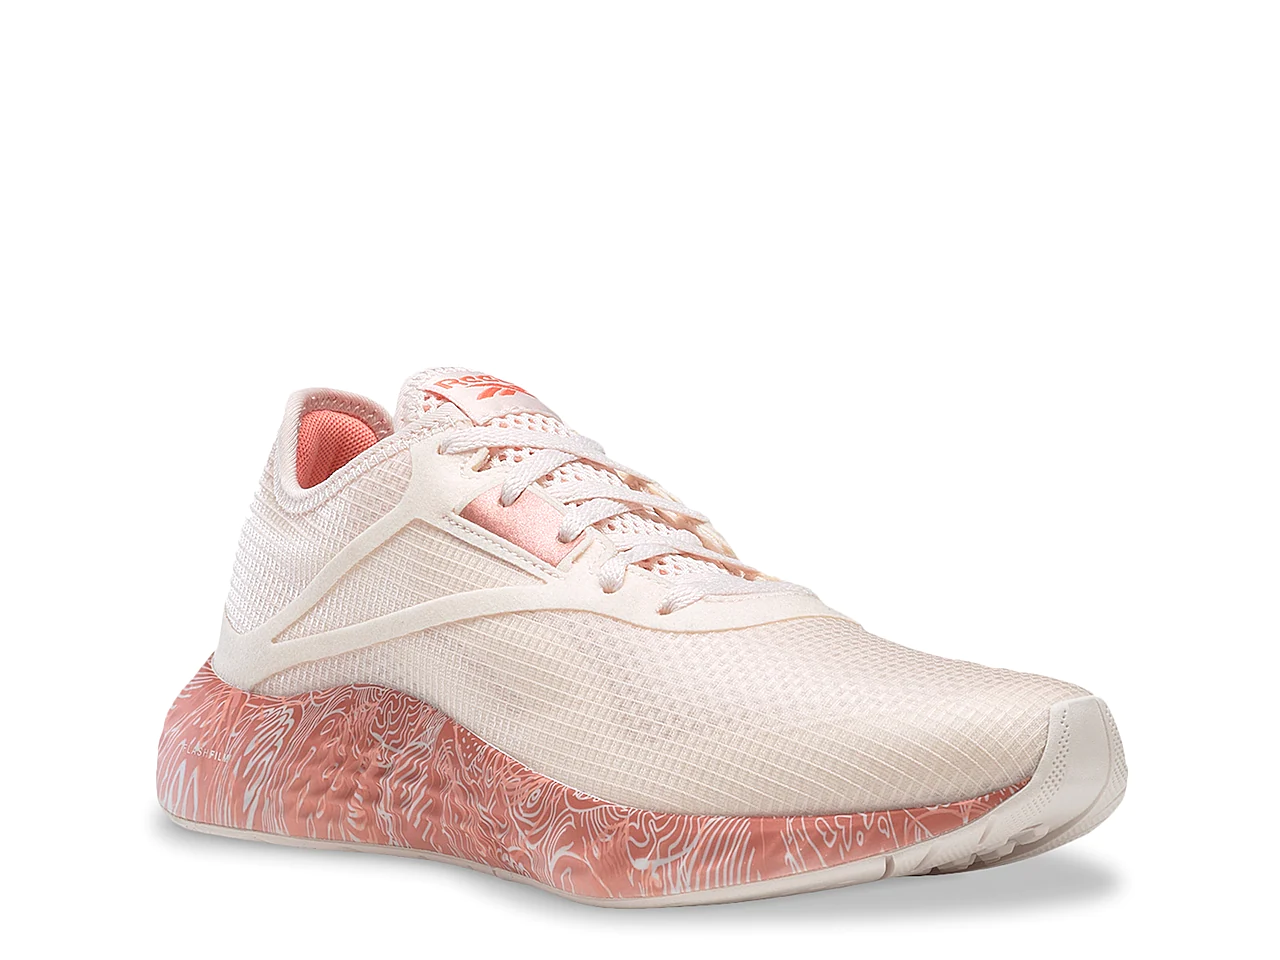 A pink running shoe